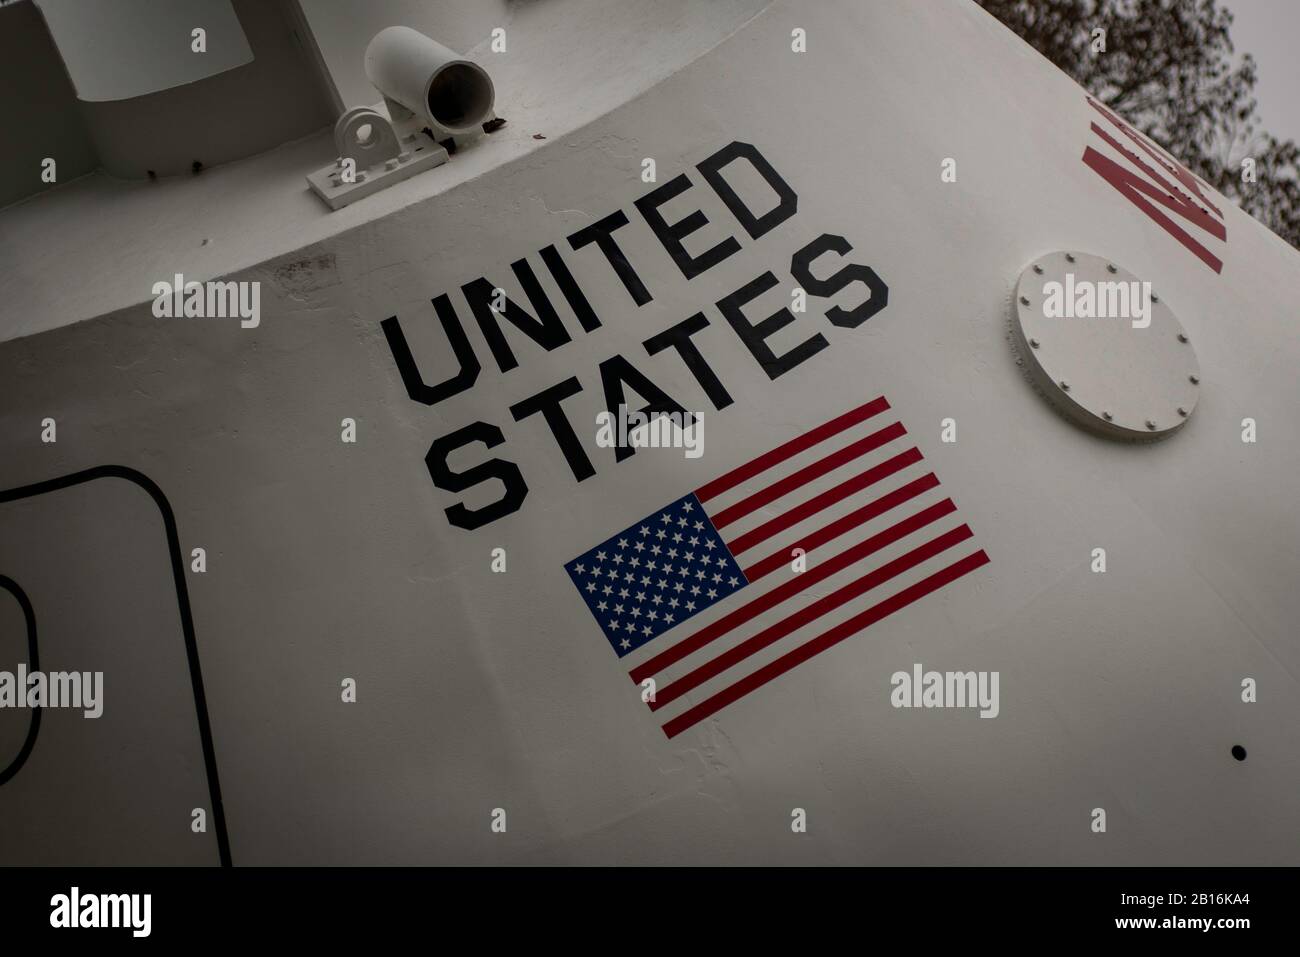 Houston, Texas - 11. Februar 2020: Flagge der Vereinigten Staaten auf Raumschiff esape pod Stockfoto